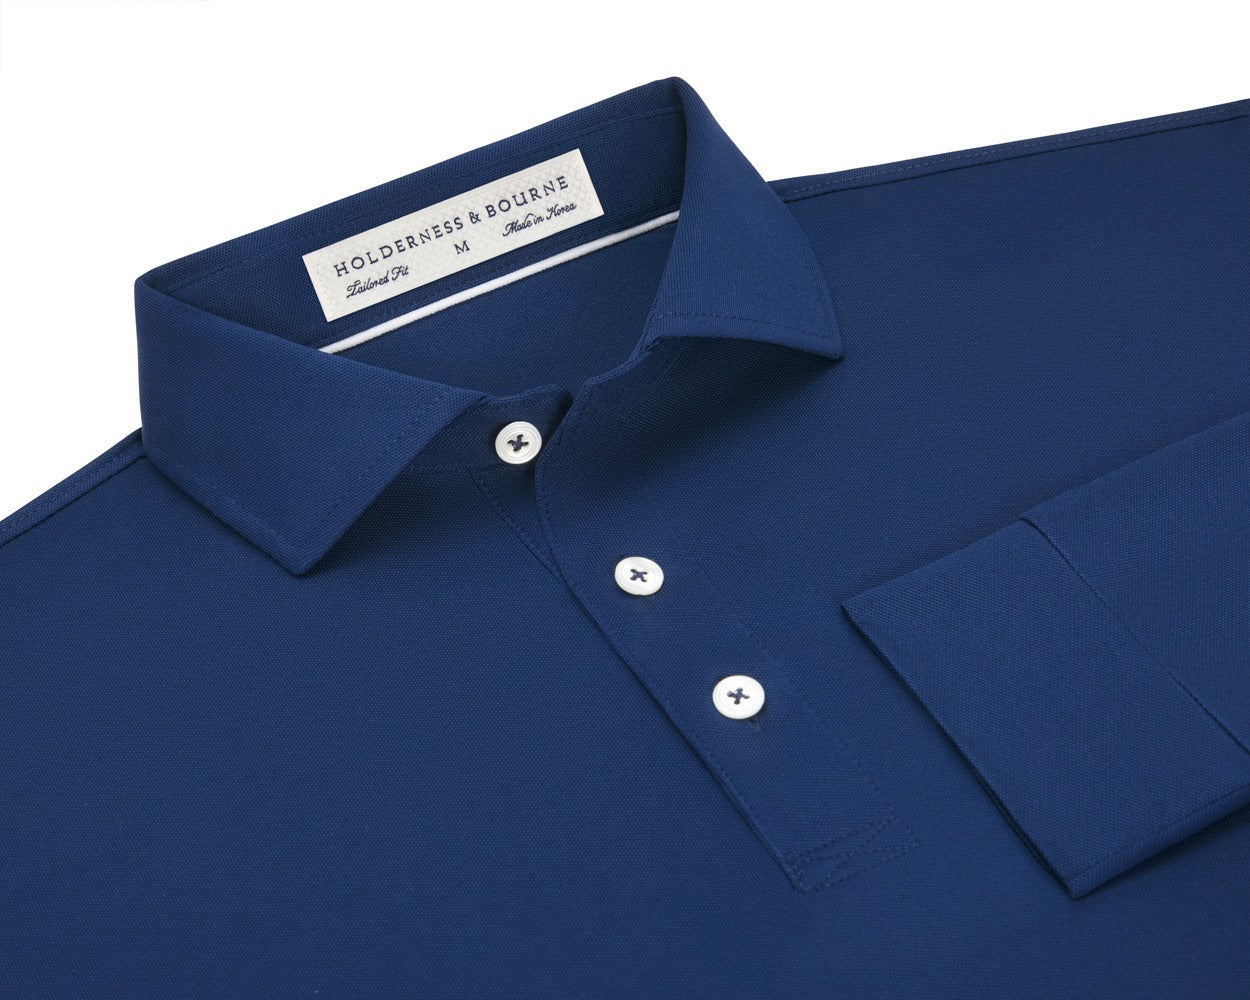 Holderness & Bourne Men's Navy Blue Long Sleeve Polo Shirt 